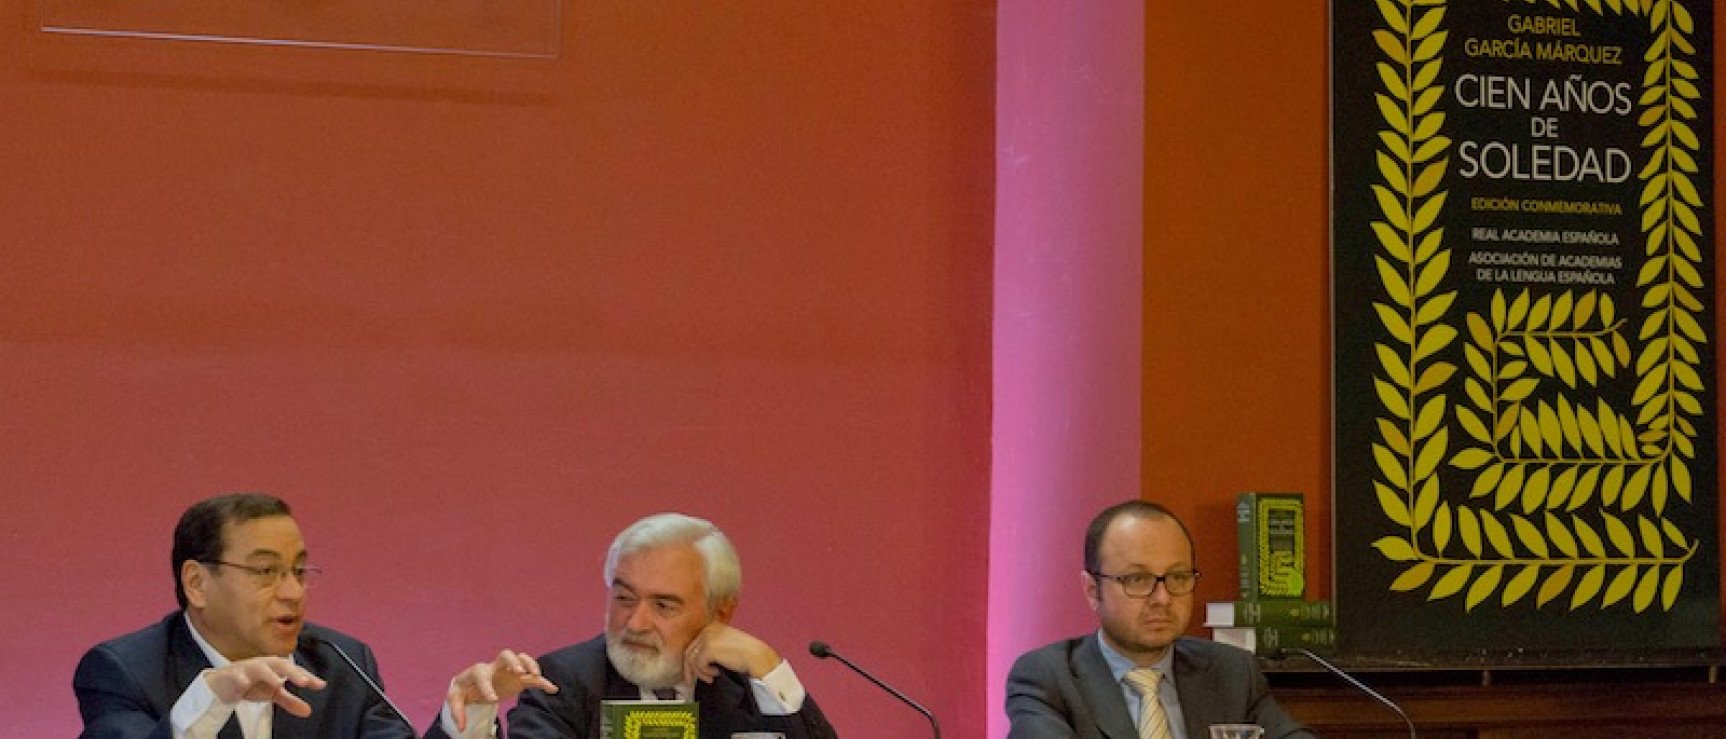 Conferencia sobre García Márquez en la RAE. De izquierda a derecha: Dasso Saldívar, Darío Villanueva y Martín Gómez.